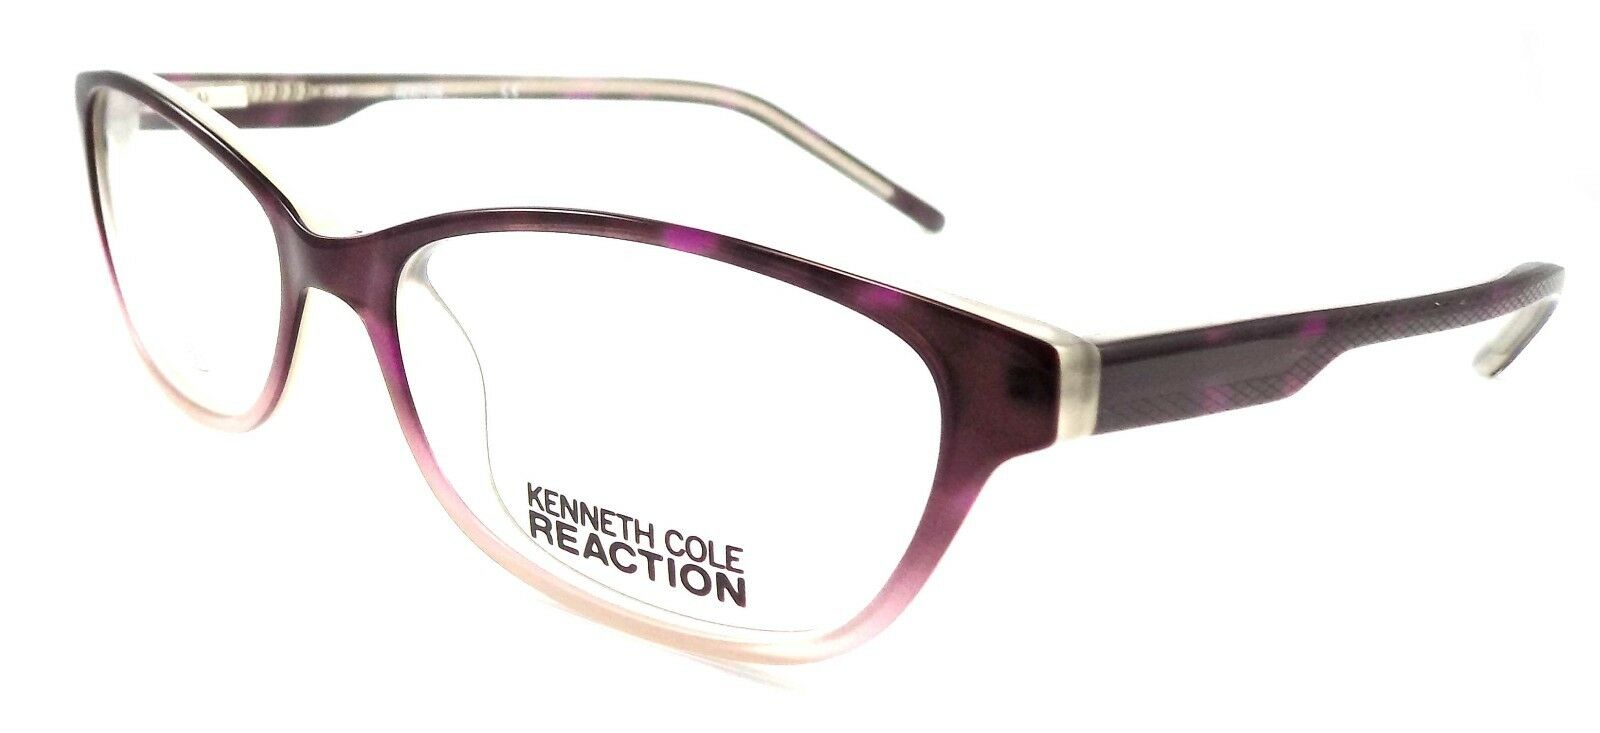 1-Kenneth Cole Reaction KC0730 055 Women's Eyeglasses 53-15-135 Purple Havana-726773215198-IKSpecs